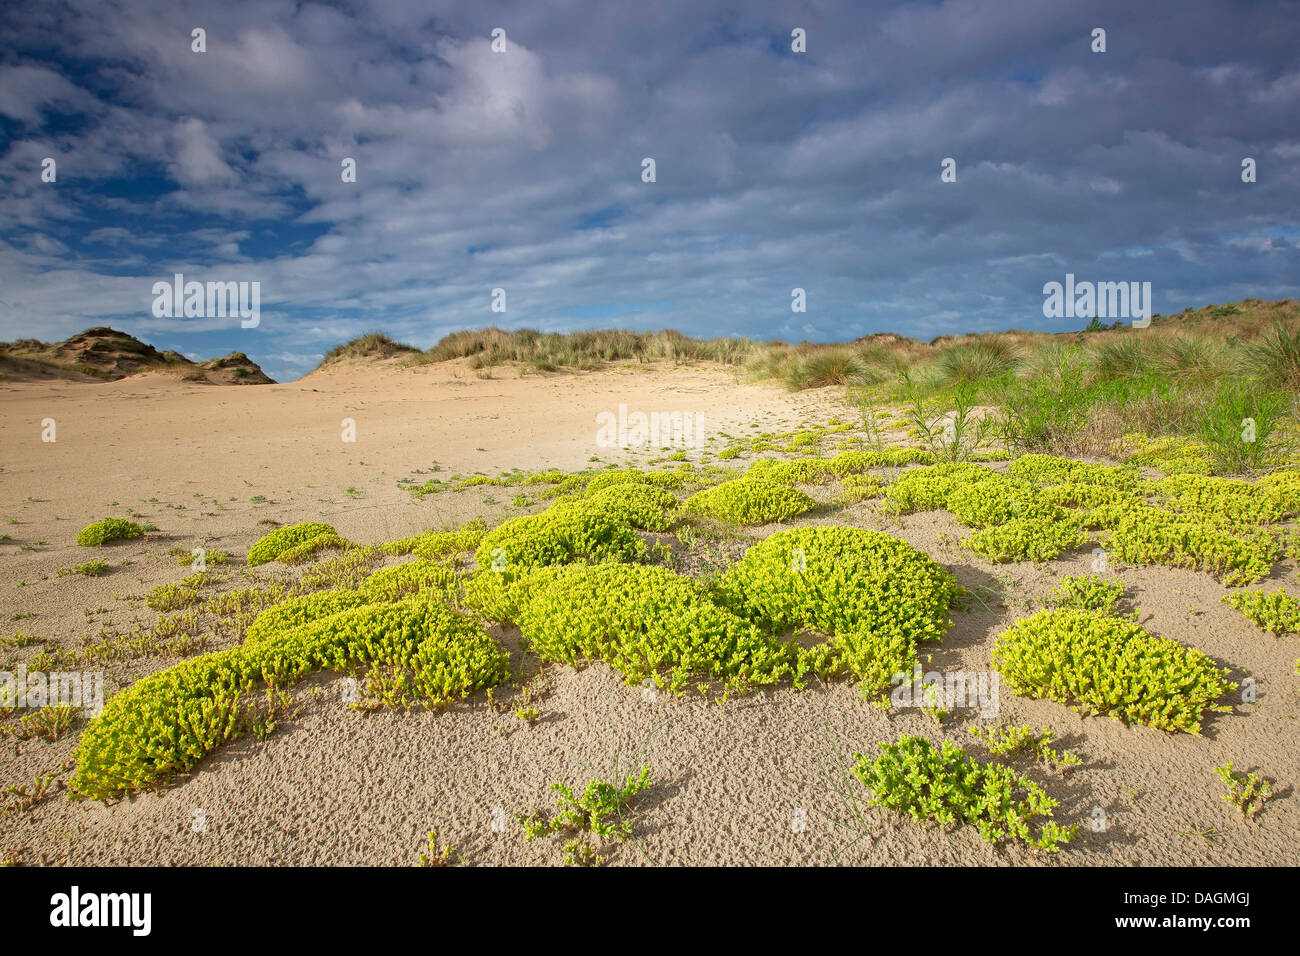 Stonecrop comune, mordere stonecrop, mossy stonecrop, parete di pepe, oro-moss (Sedum acre), fioritura sulle dune, Belgio, Naturreservat De Westhoek Foto Stock